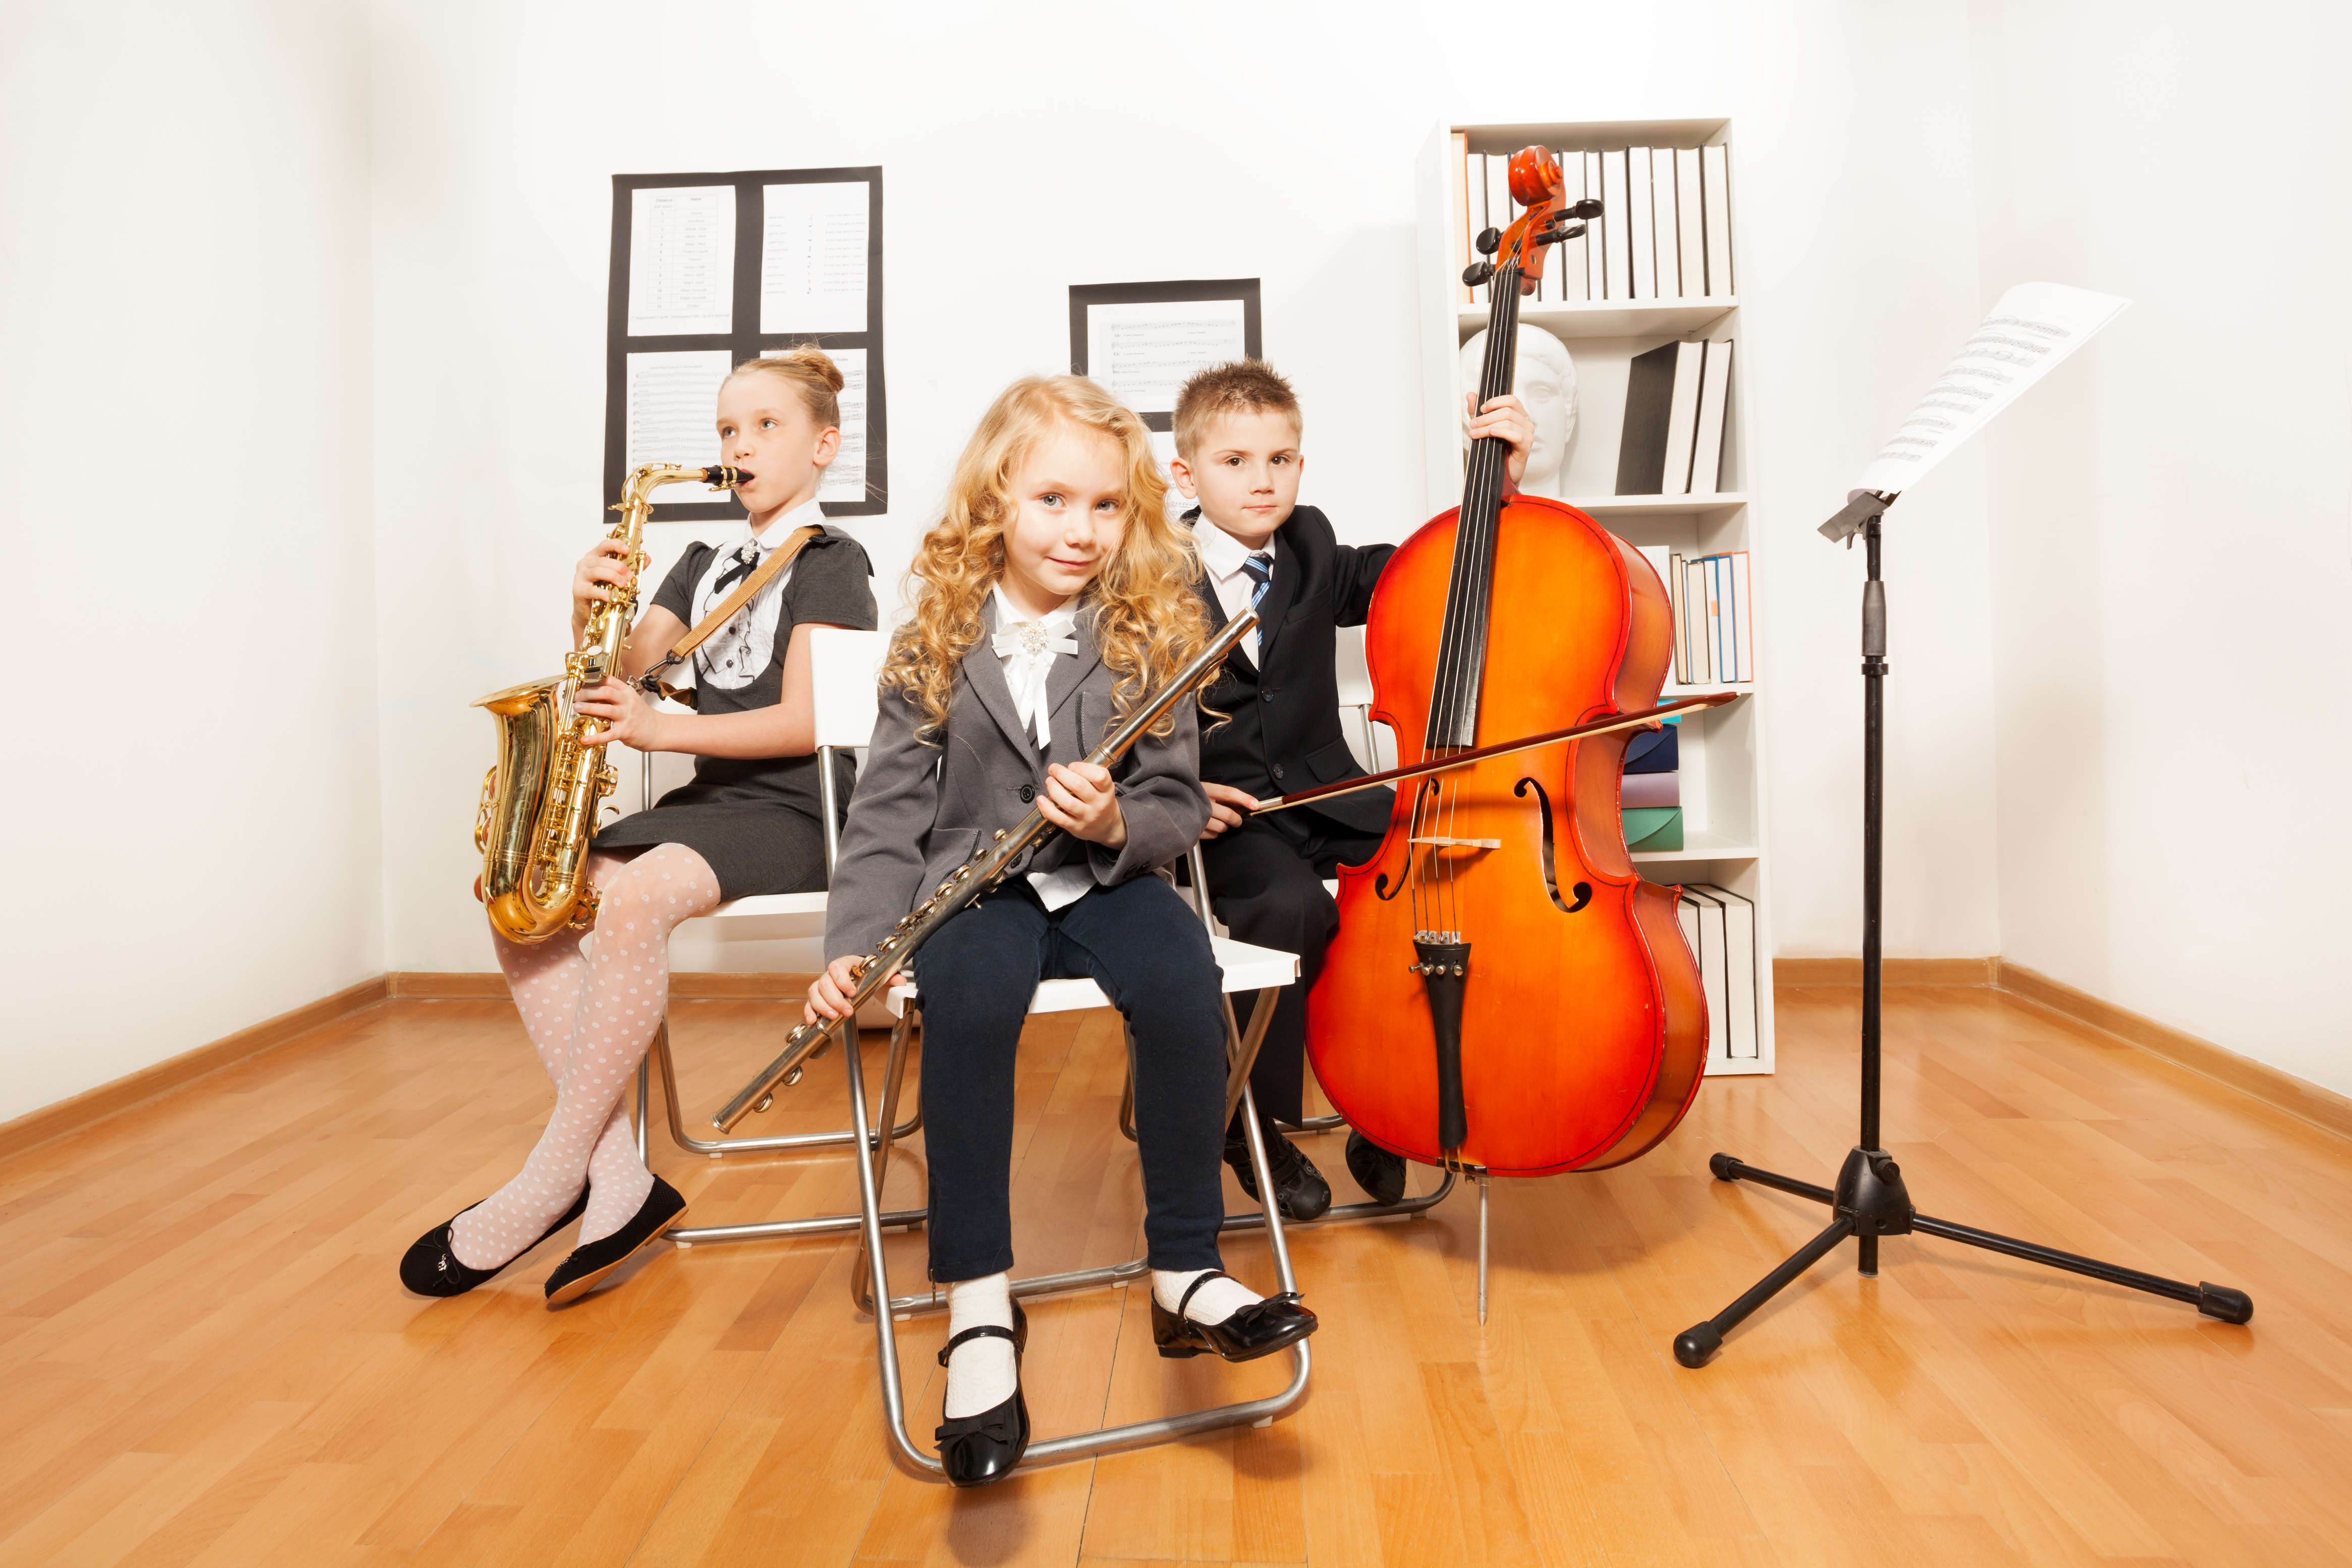 Вечера в музыкальных школах. Музыкальные инструменты для детей. Дети музыканты. Дети в музыкальной школе. Дети играют на инструментах.